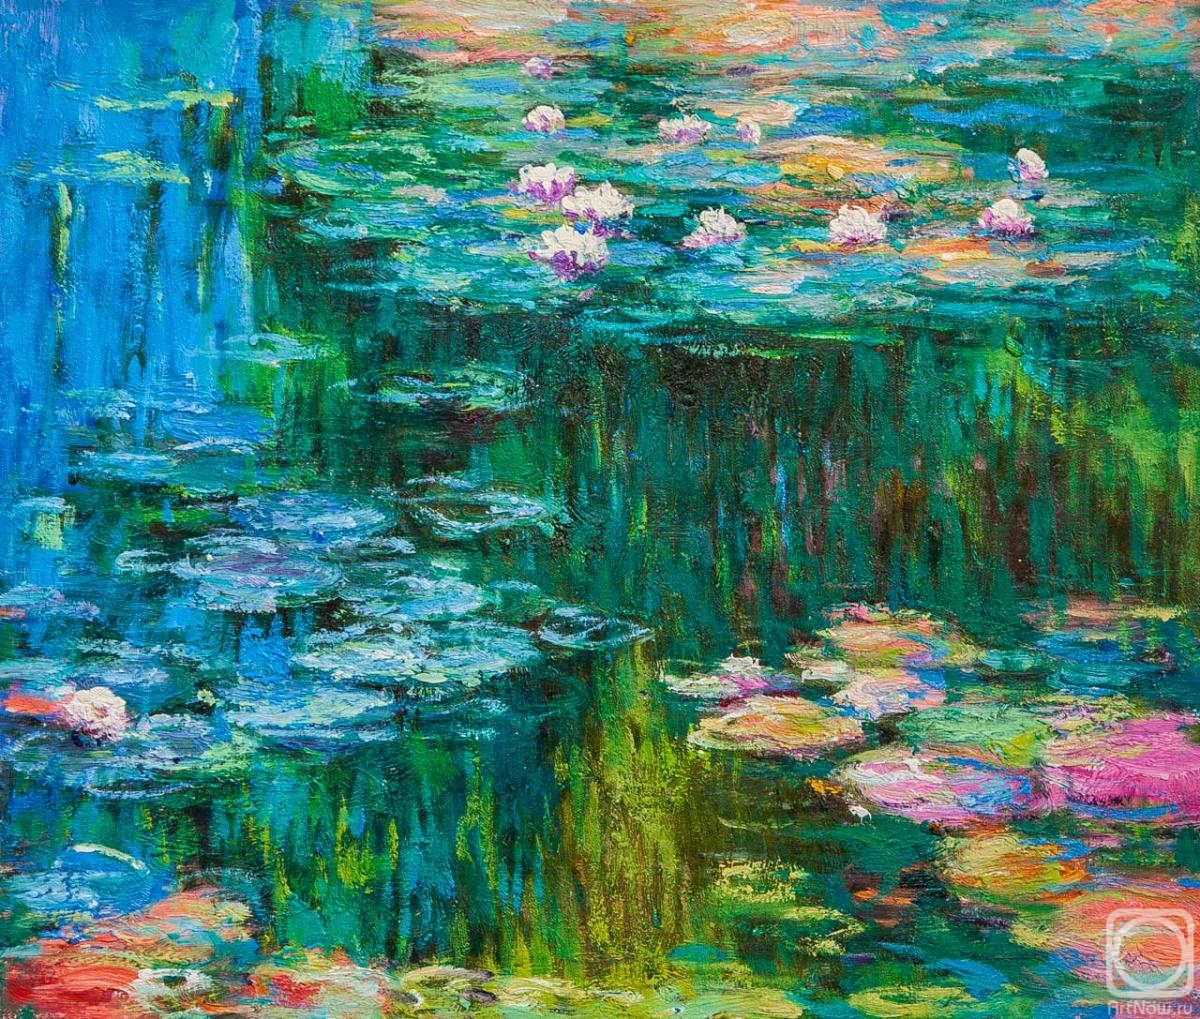 Kamskij Savelij. Copy of Claude Monet's painting Water Lilies, N10